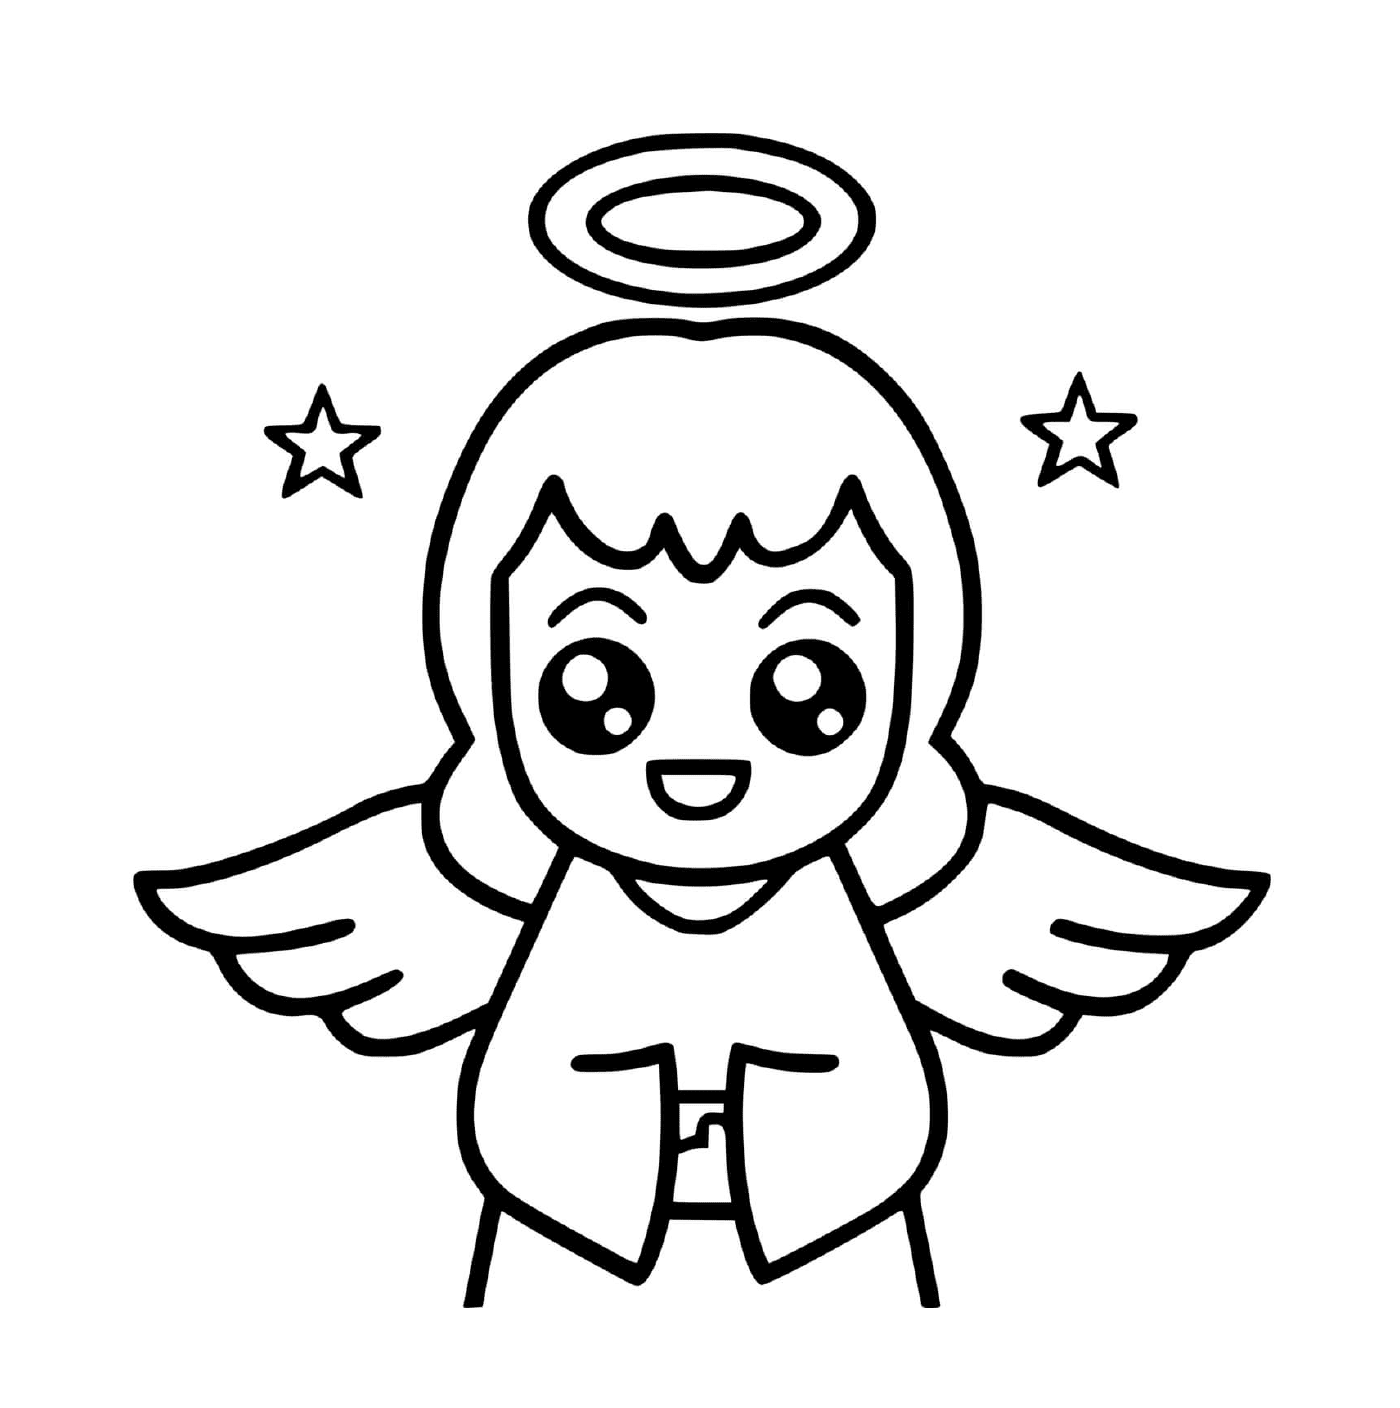  एक स्वर्गदूत जिसके पास अनबन है 